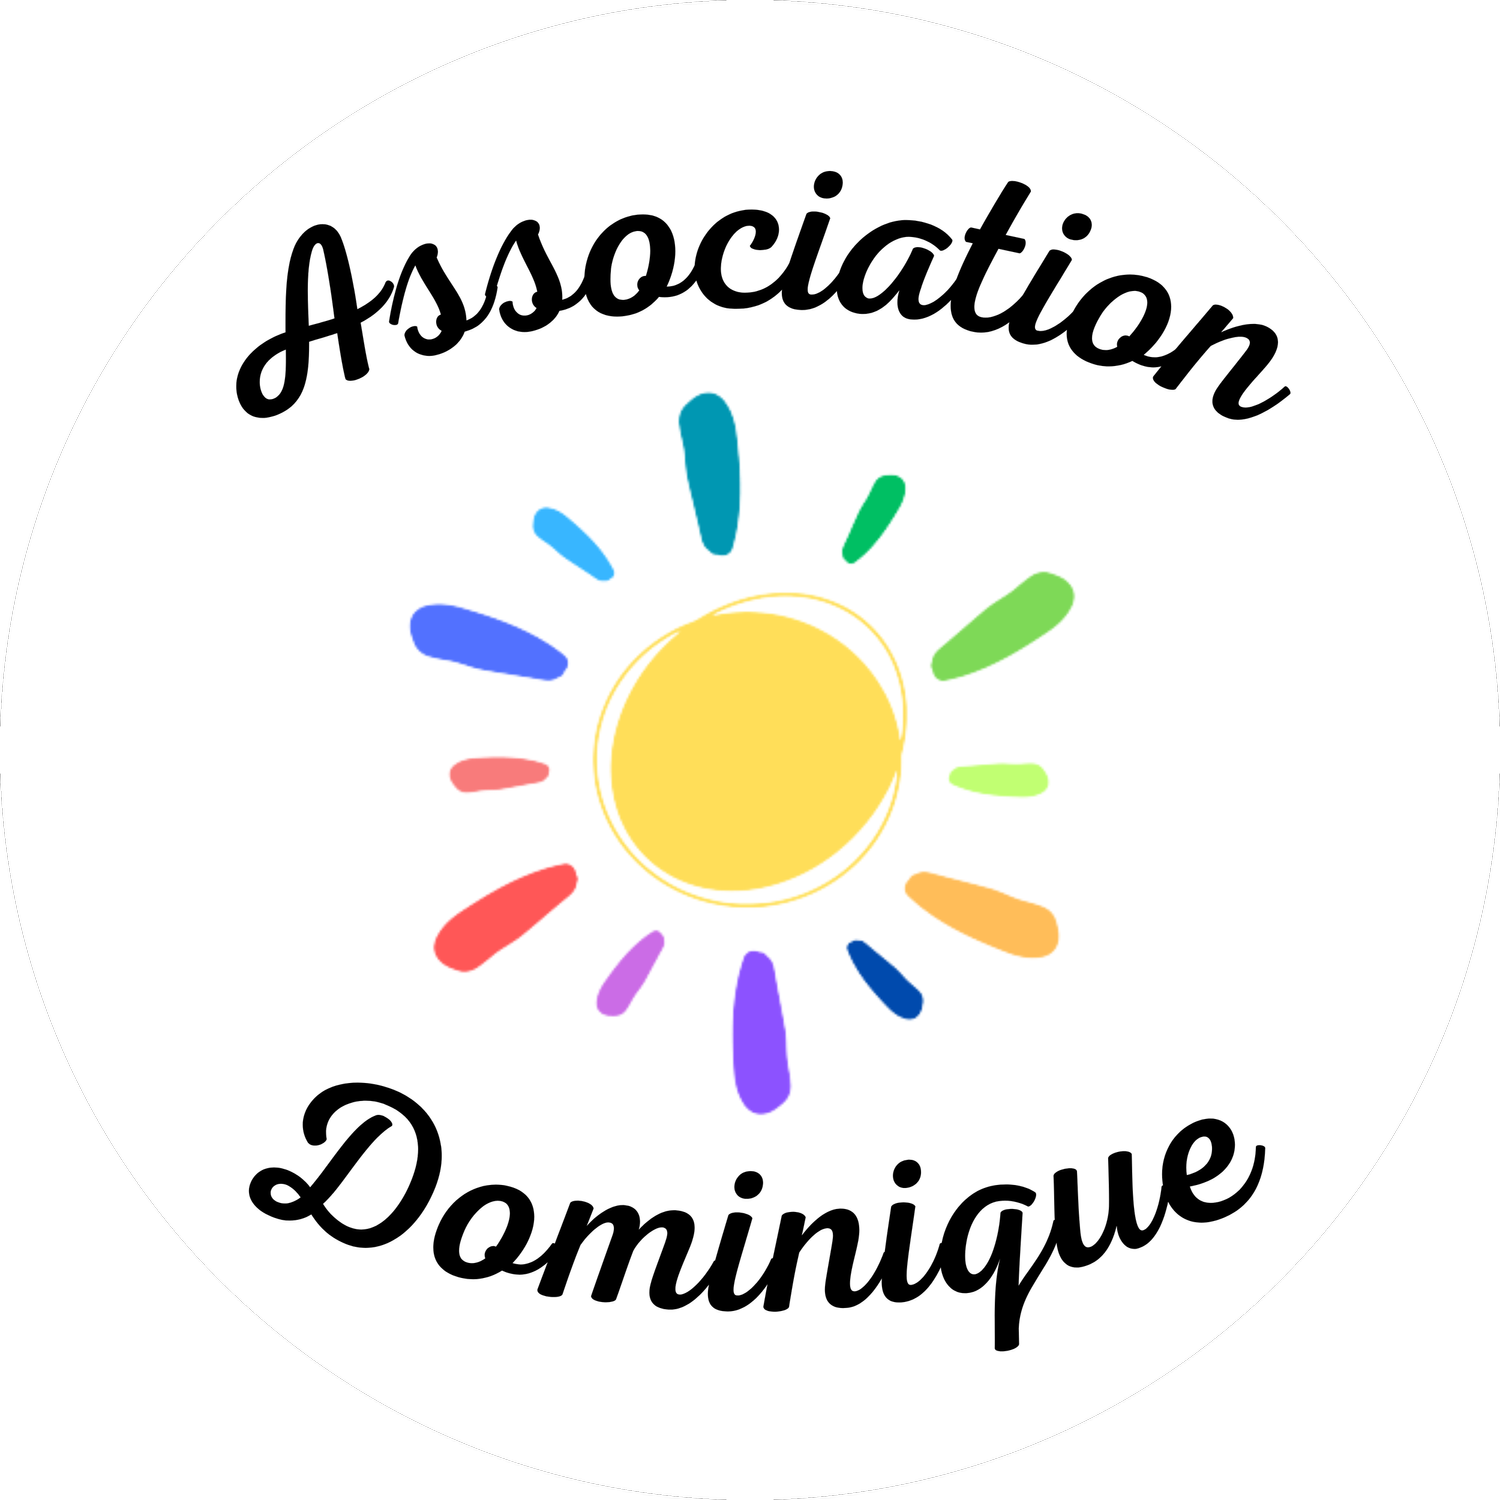 Association Dominique